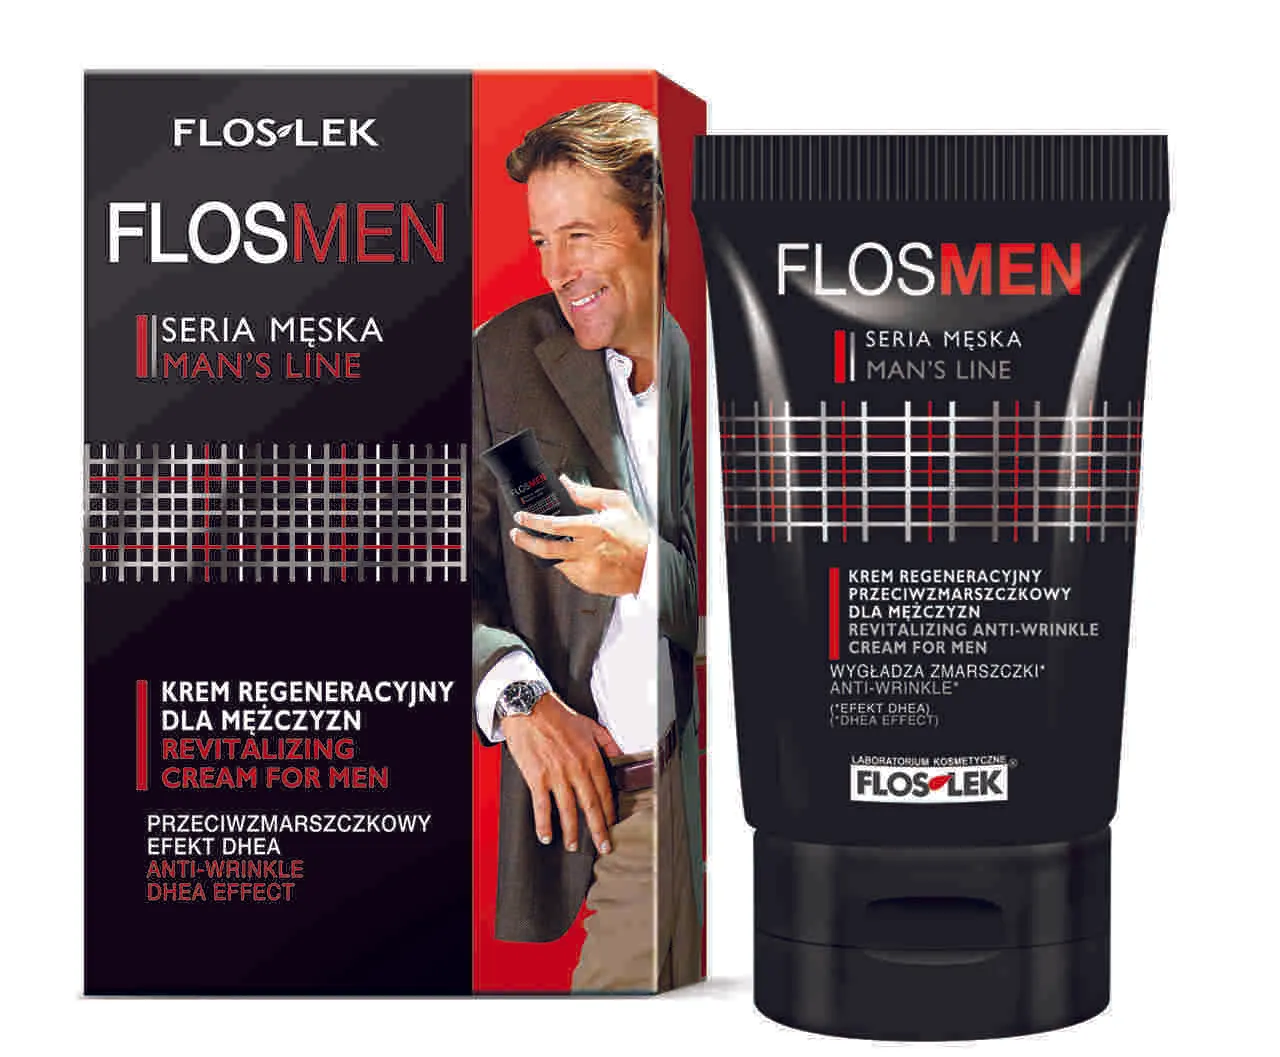 Floslek Flosmen, krem regeneracyjny, przeciwzmarszczkowy, 50 ml